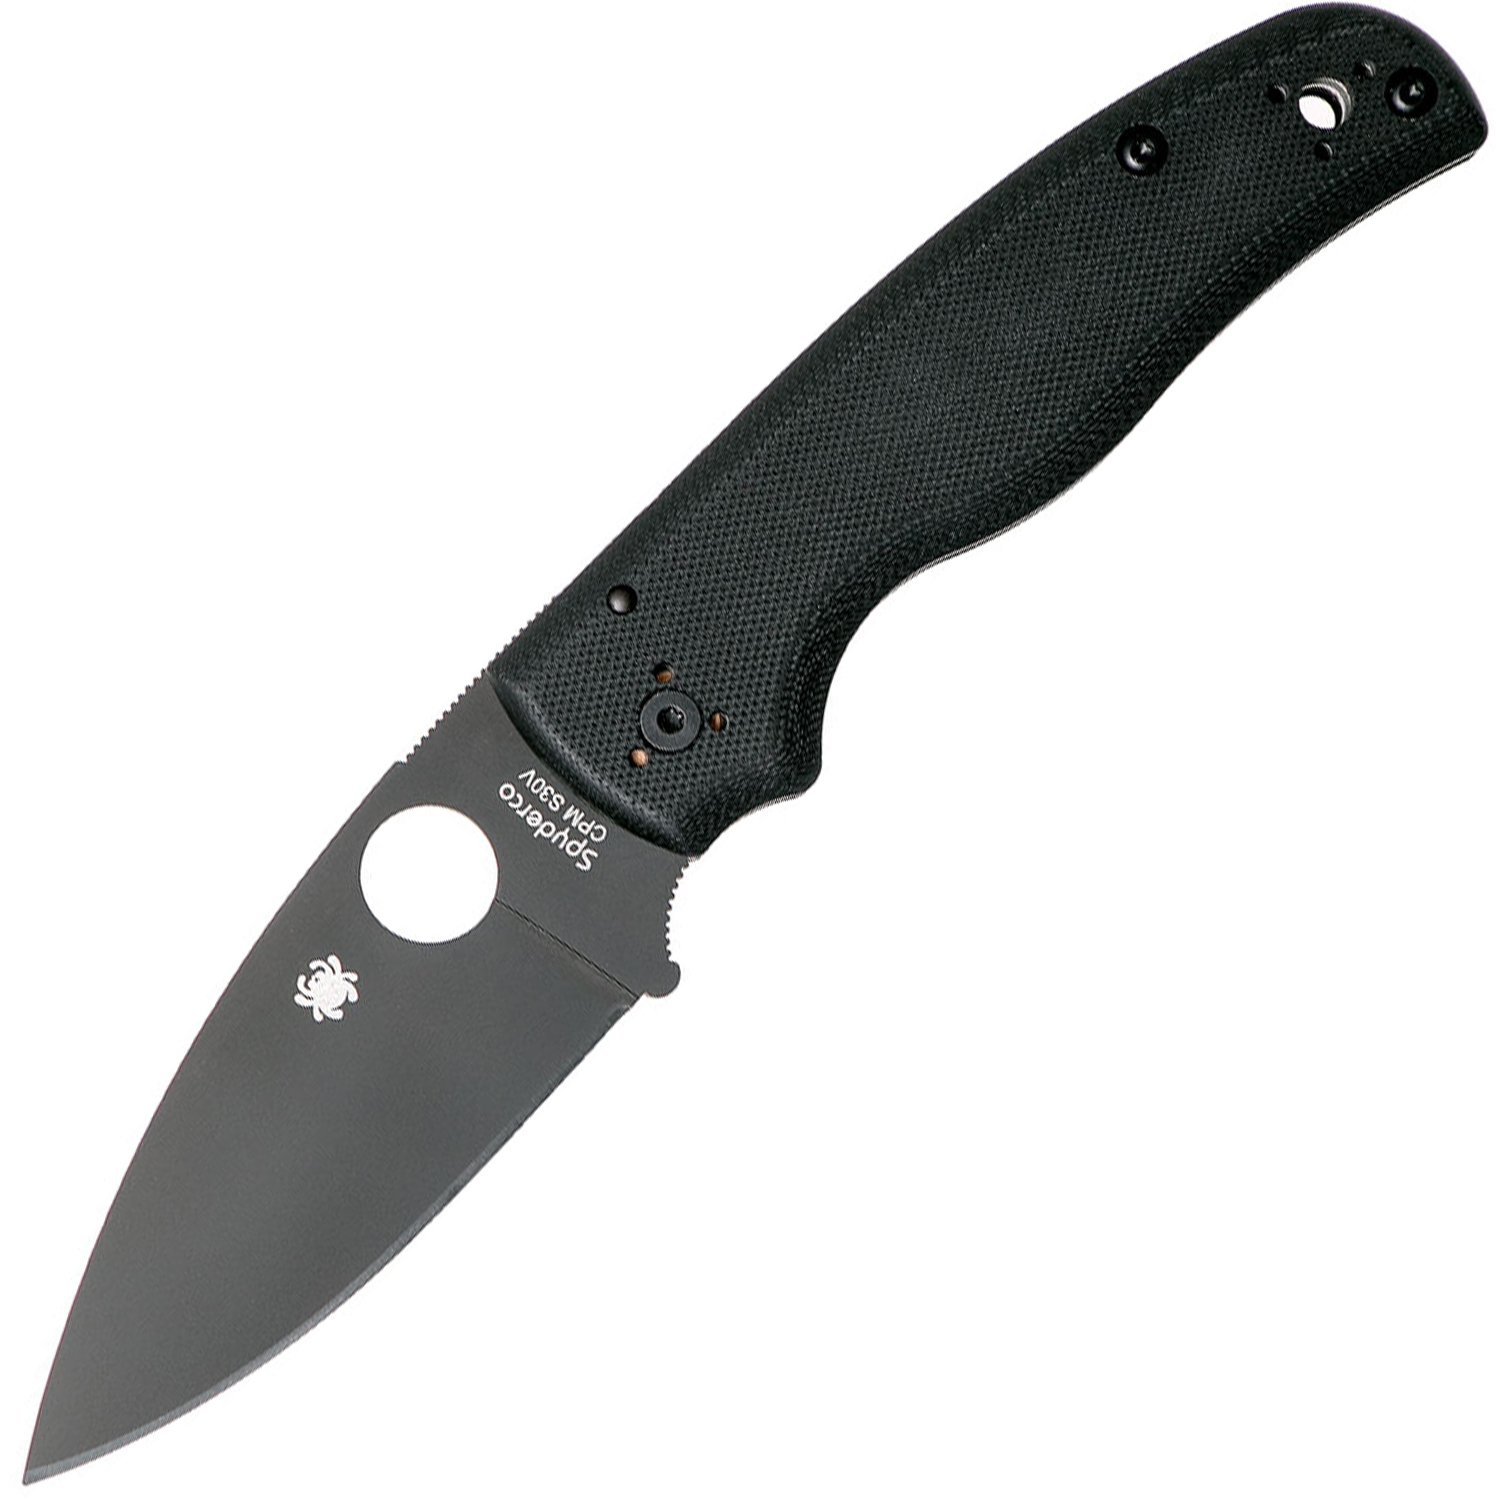 Складной нож Spyderco Shaman 229GPBK, сталь CPM® S30V™ Black DLC Coated Plain, рукоять стеклотекстолит G10, чёрный